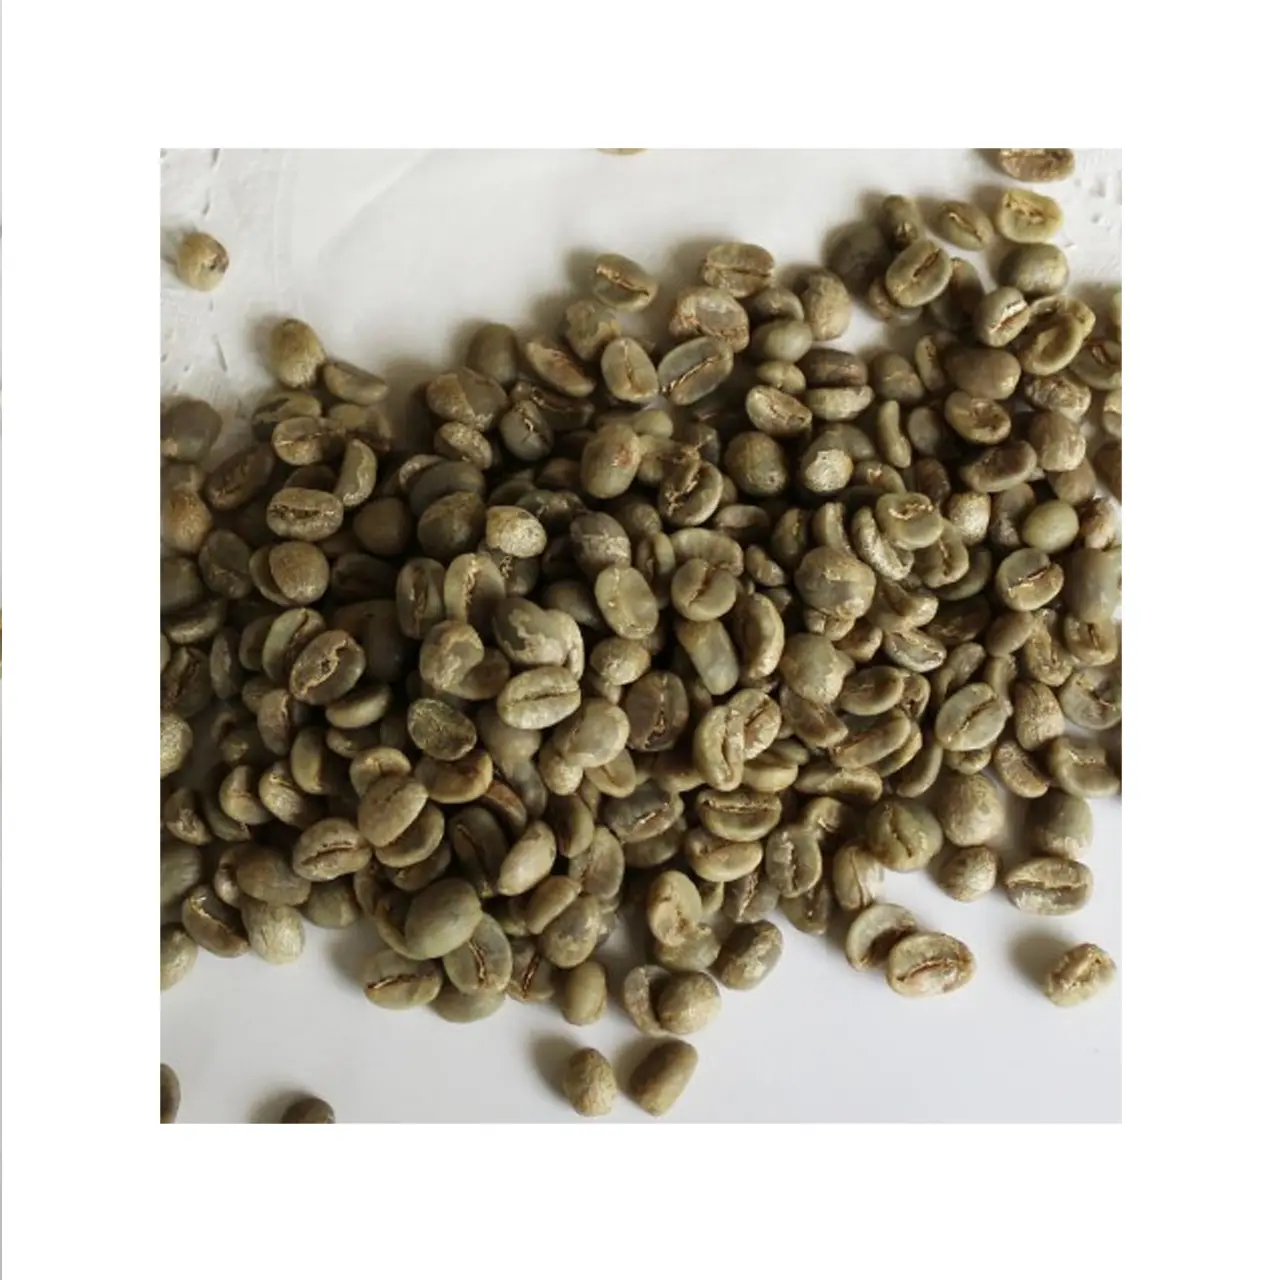 Üretim ürünleri özel kahve ham kahve çekirdekleri fiyatı Vietnam ihracat ürünleri bütün fasulye kahve Robusta yeşil fasulye